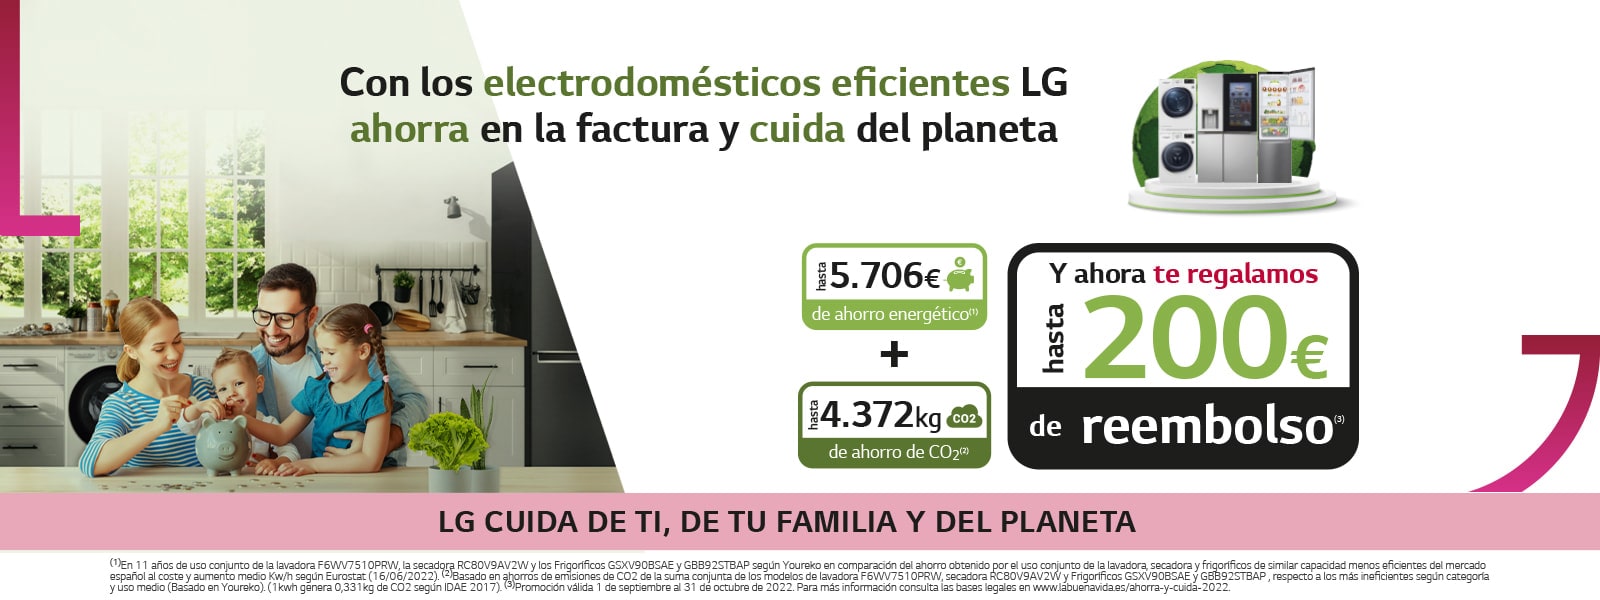 Con los electrodomésticos eficientes de LG ahorra en la factura y cuida del planeta